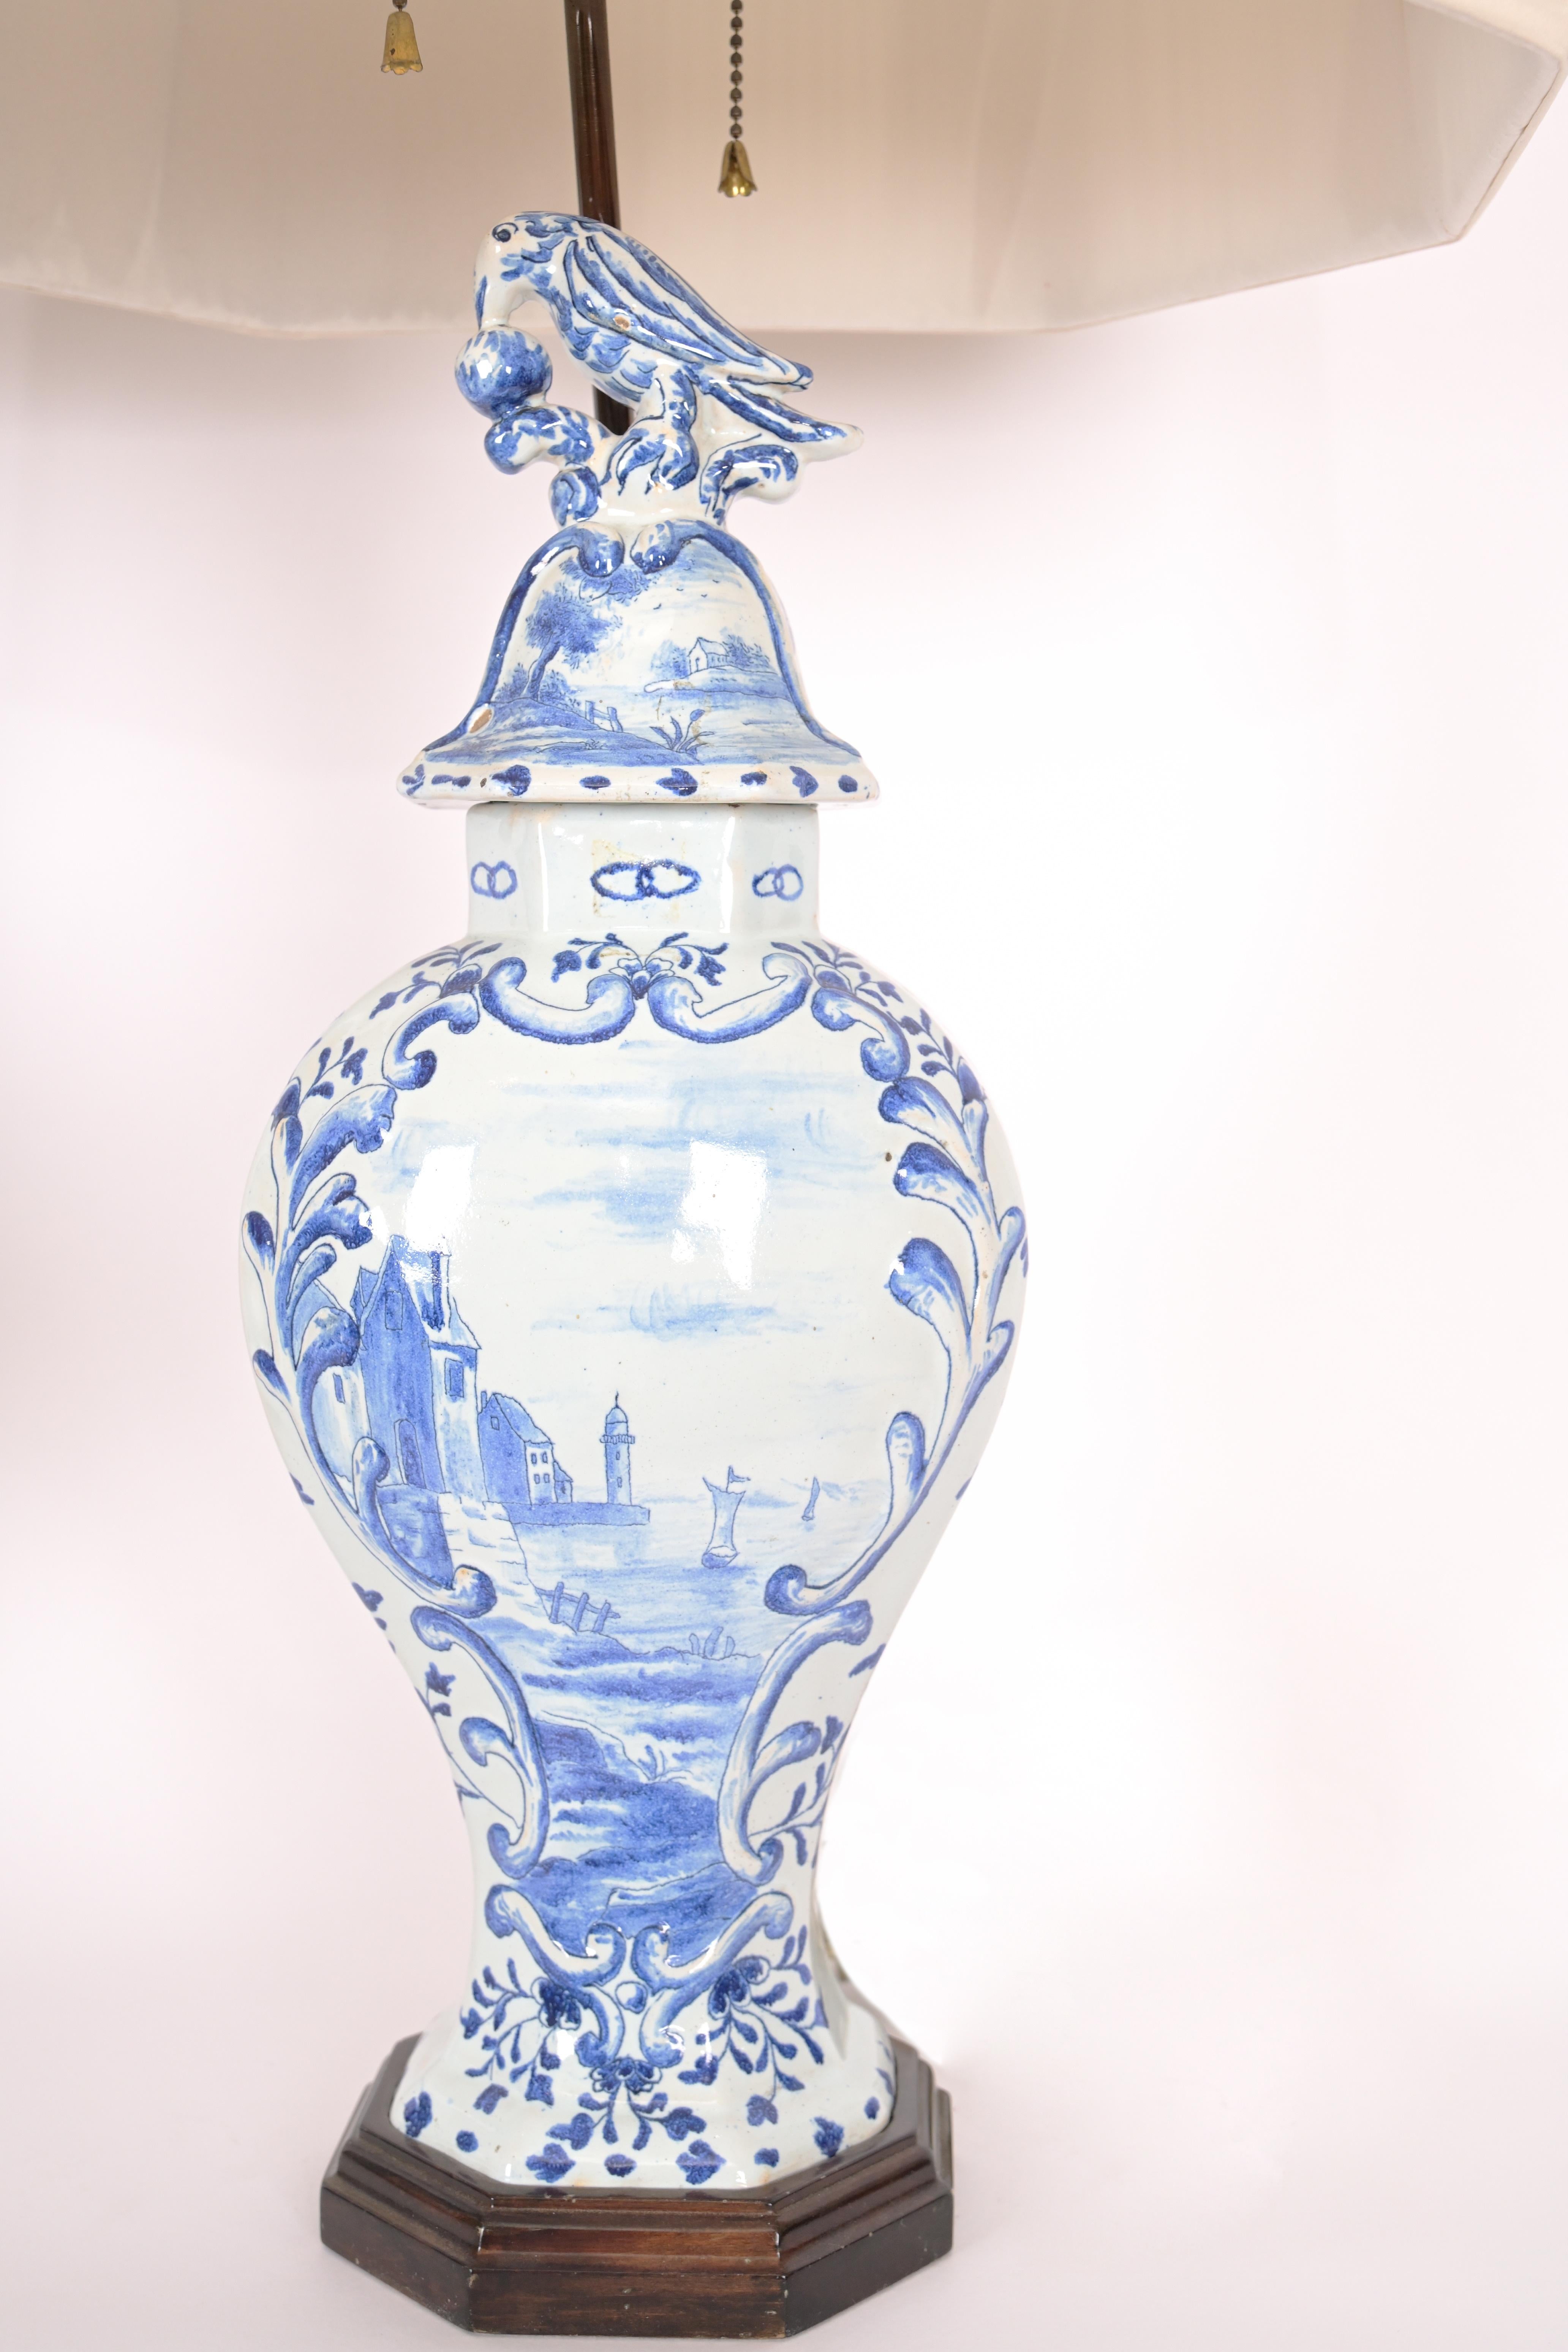 Ein Paar Delft-Vasen aus dem 19. Jahrhundert mit traditionellem Dekor in Blau auf Weiß mit schwarz bemalten Sockeln und Vögeln auf den Deckeln. Die Lampen werden mit einer speziellen Messingverdrahtung montiert, die der Silhouette entspricht. Jetzt